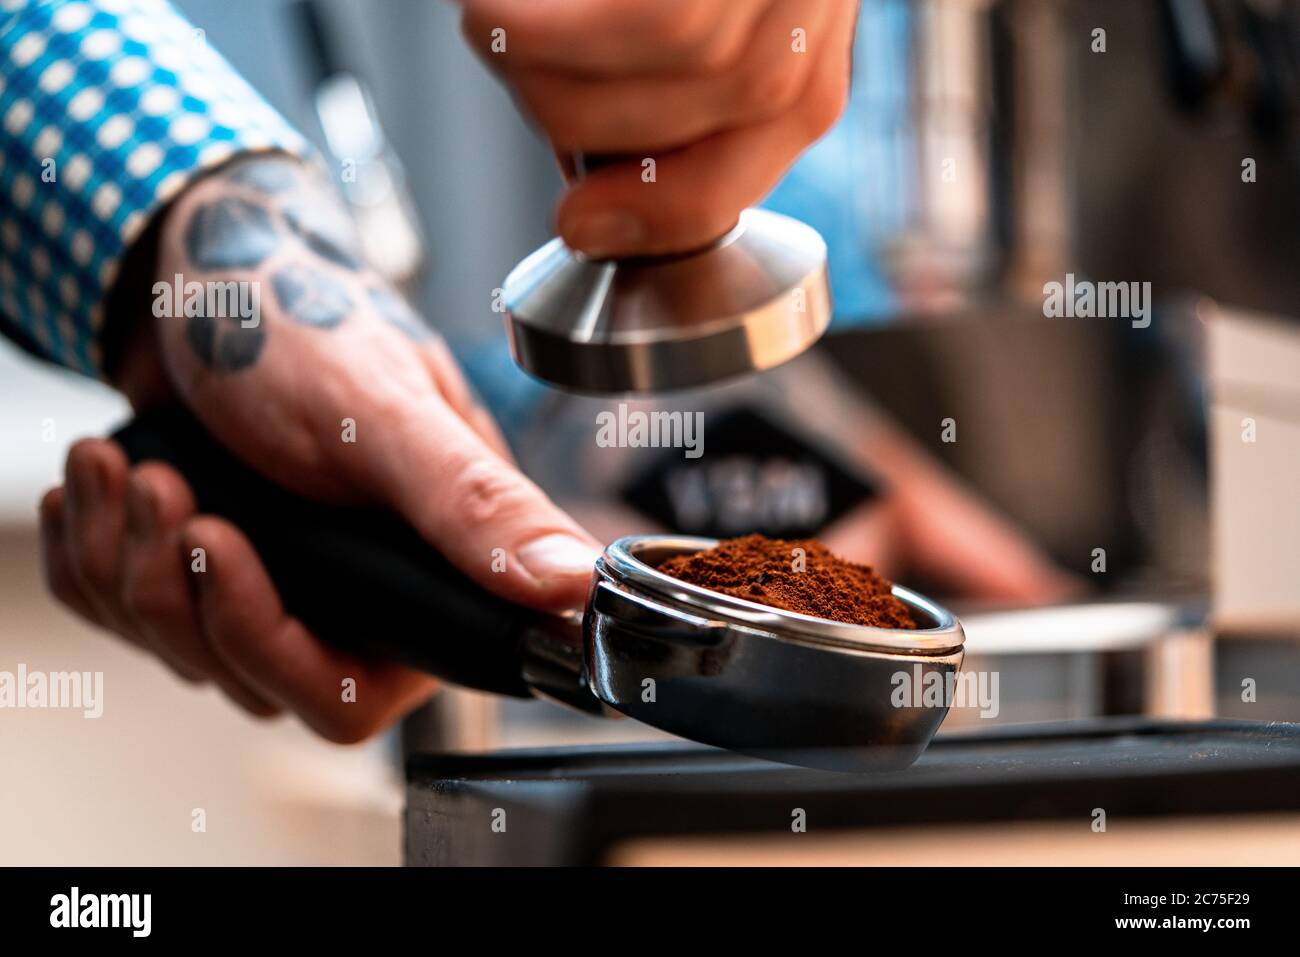 Primo piano del portafiltro Barista Hands Holding con caffè macinato. Preparazione del caffè a casa. Buon caffè senza lasciare casa Foto Stock